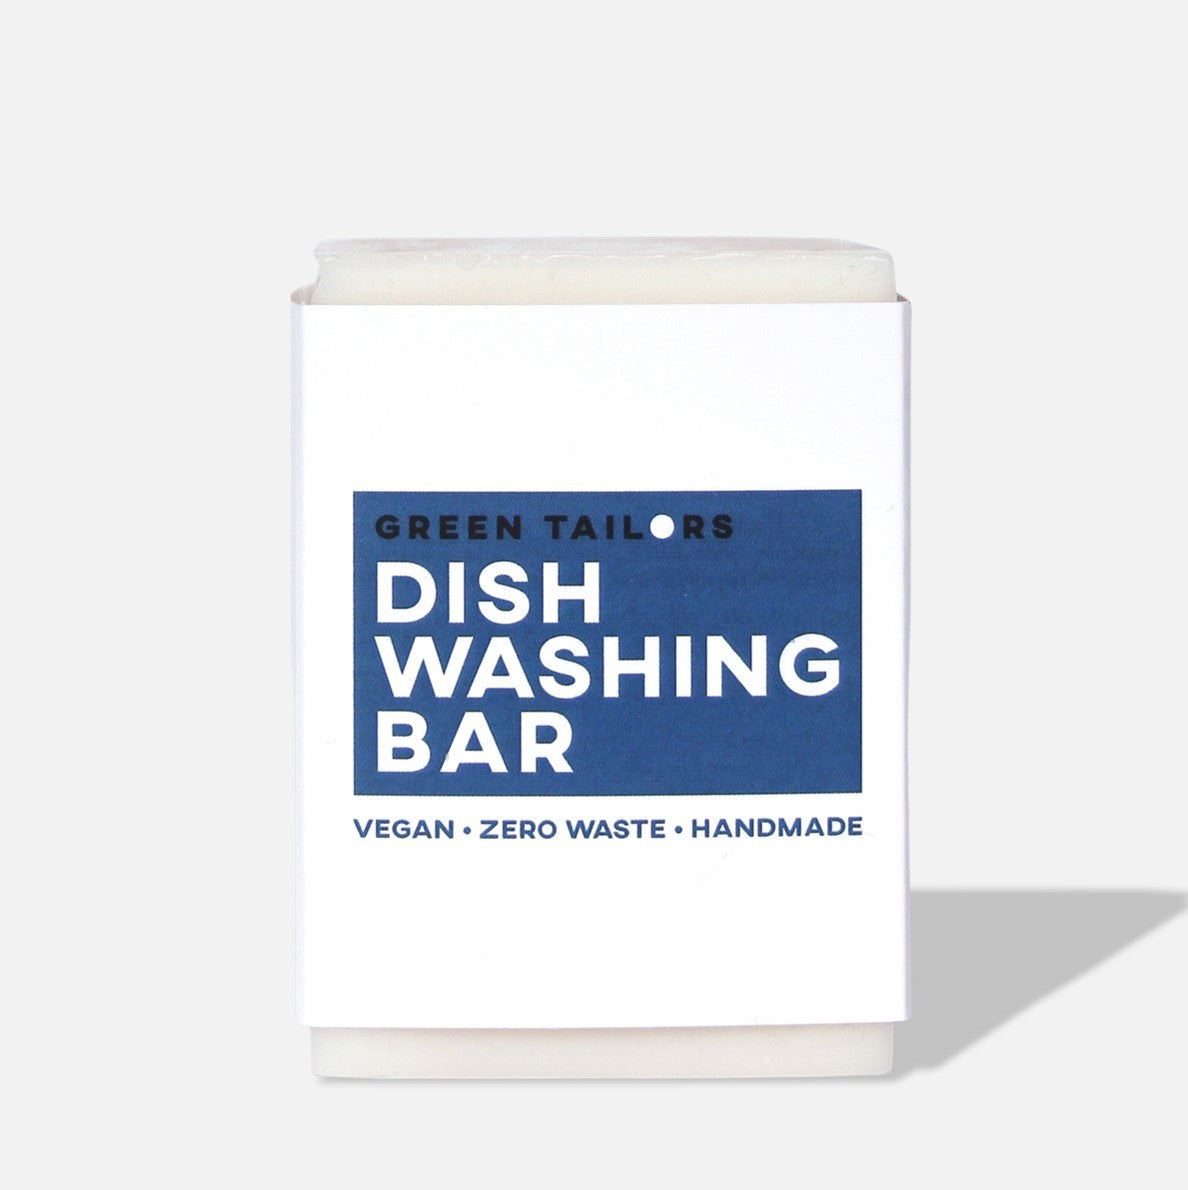 Dish Washing Soap Bar